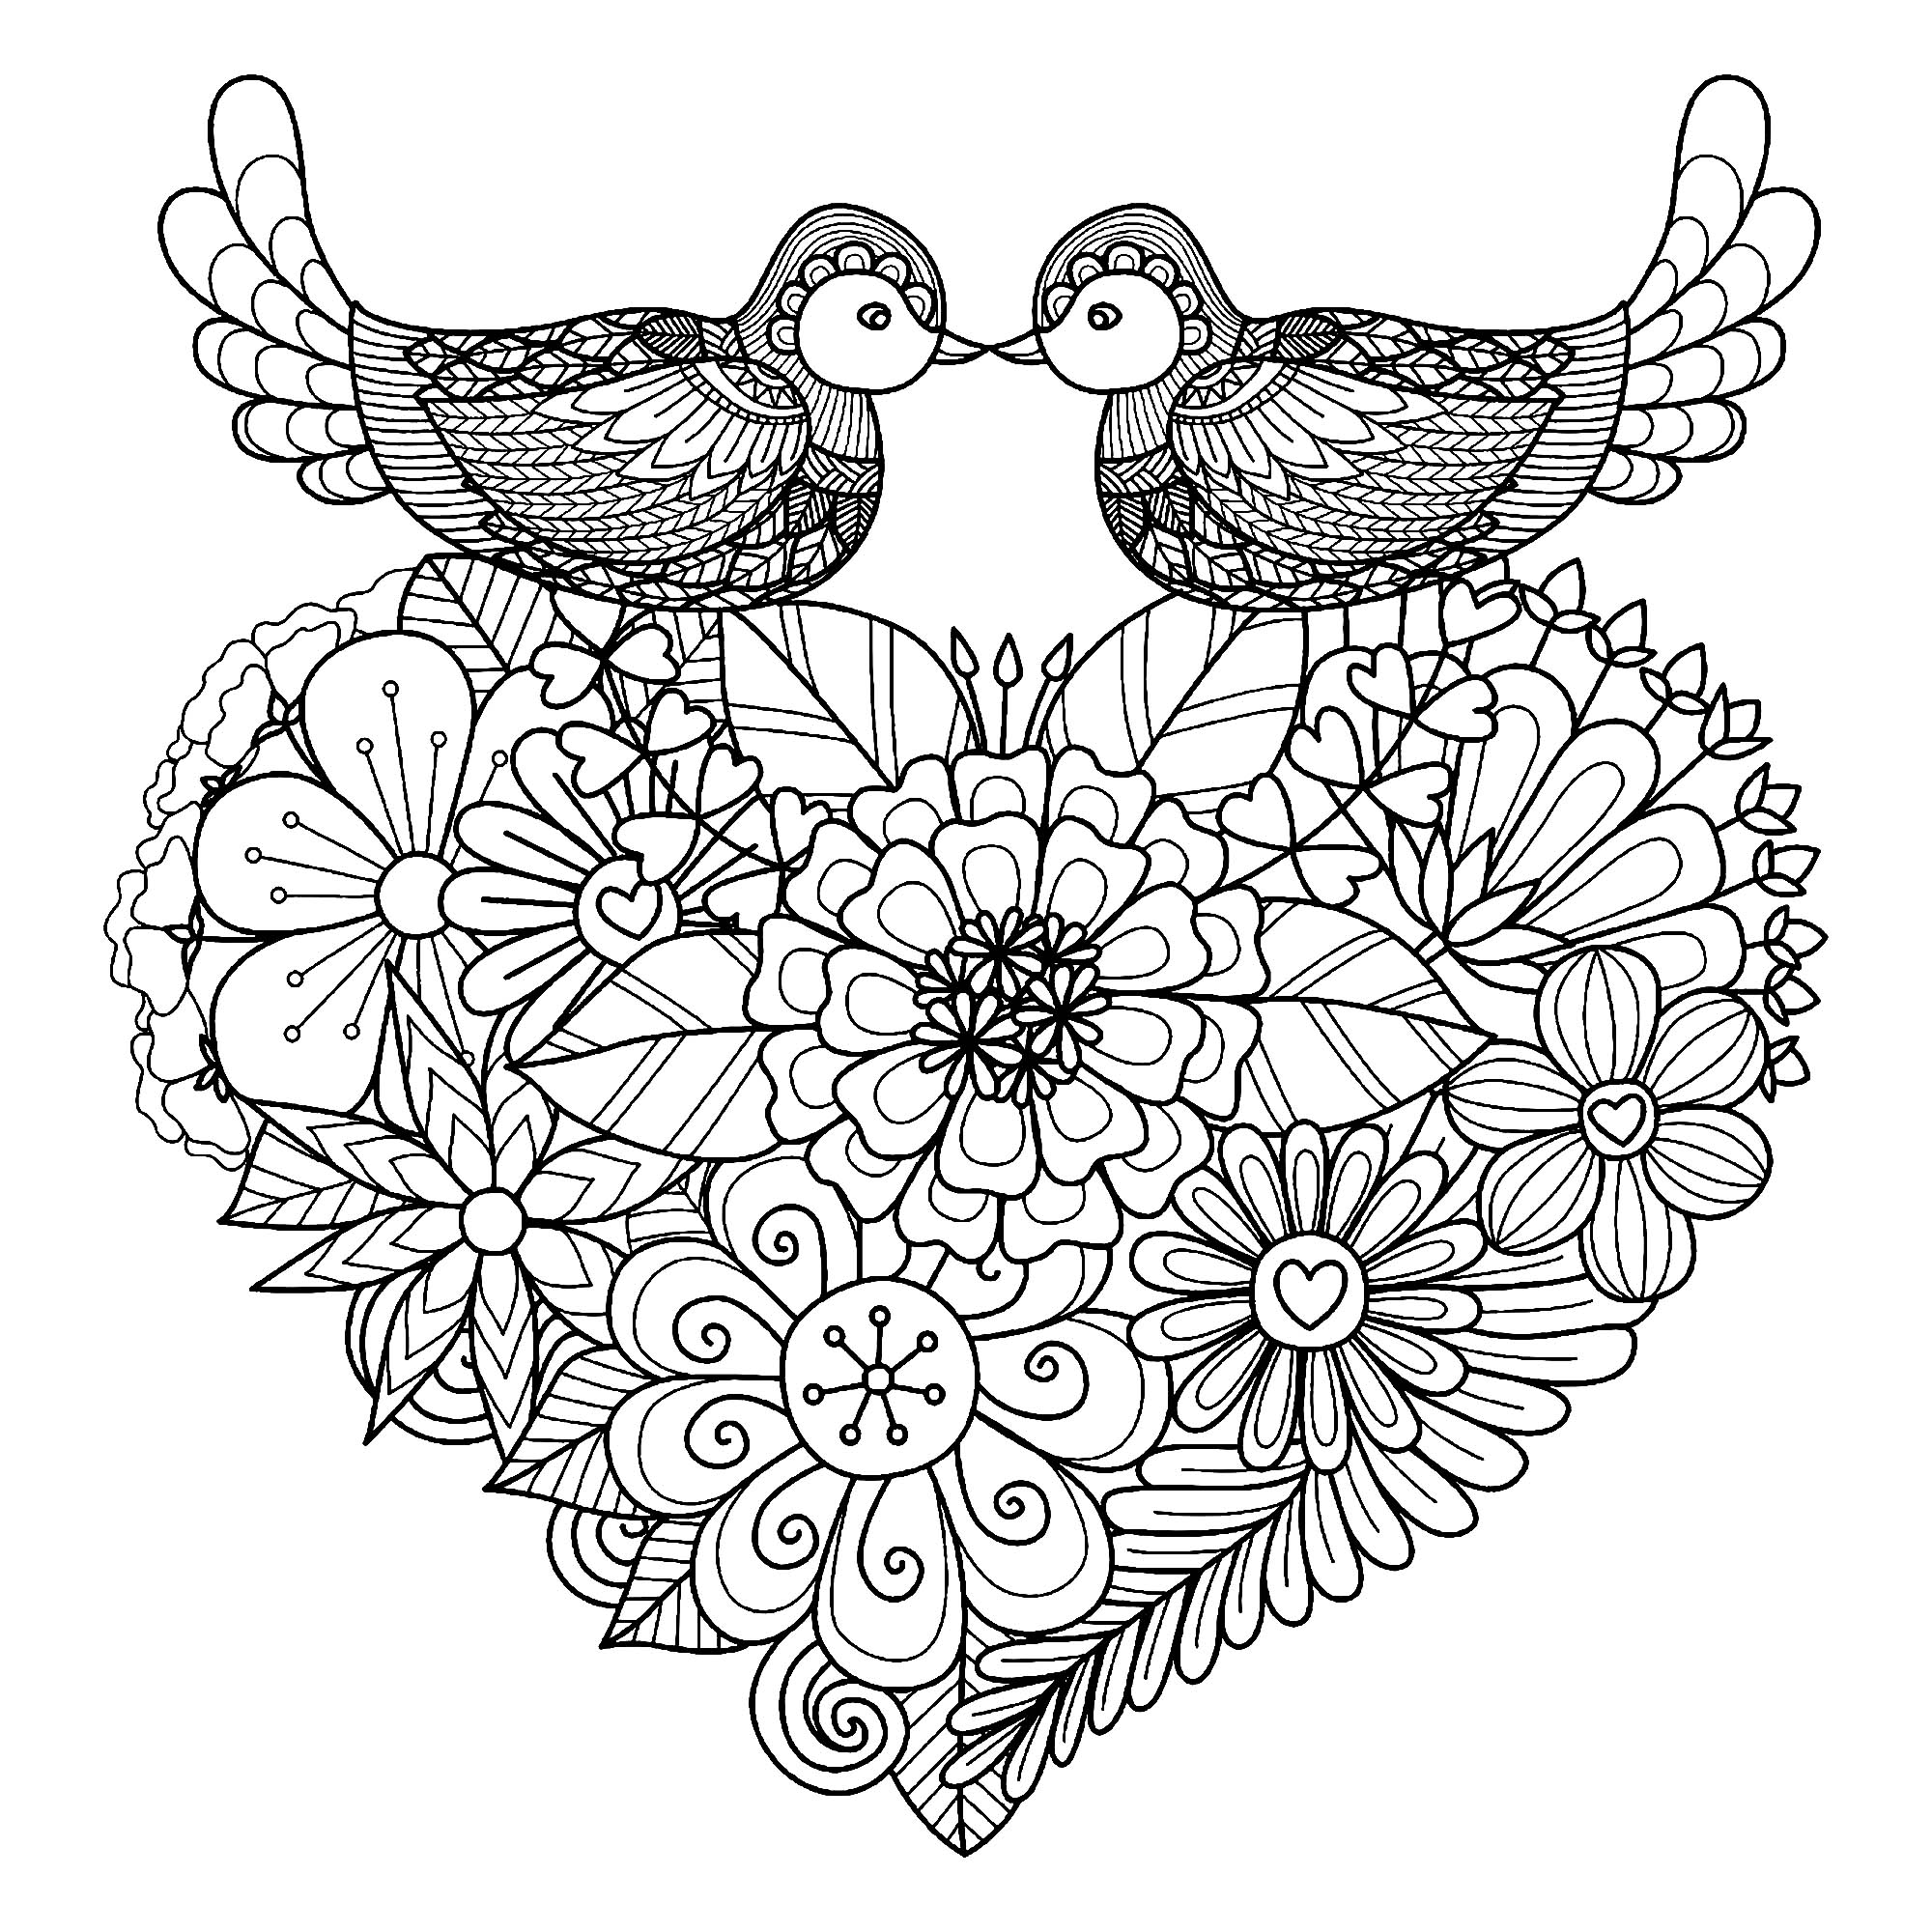 Colorare questi due uccelli simmetrici che si posano su un cuore pieno di fiori originali, Artista : Bimdeedee   Fonte : 123rf